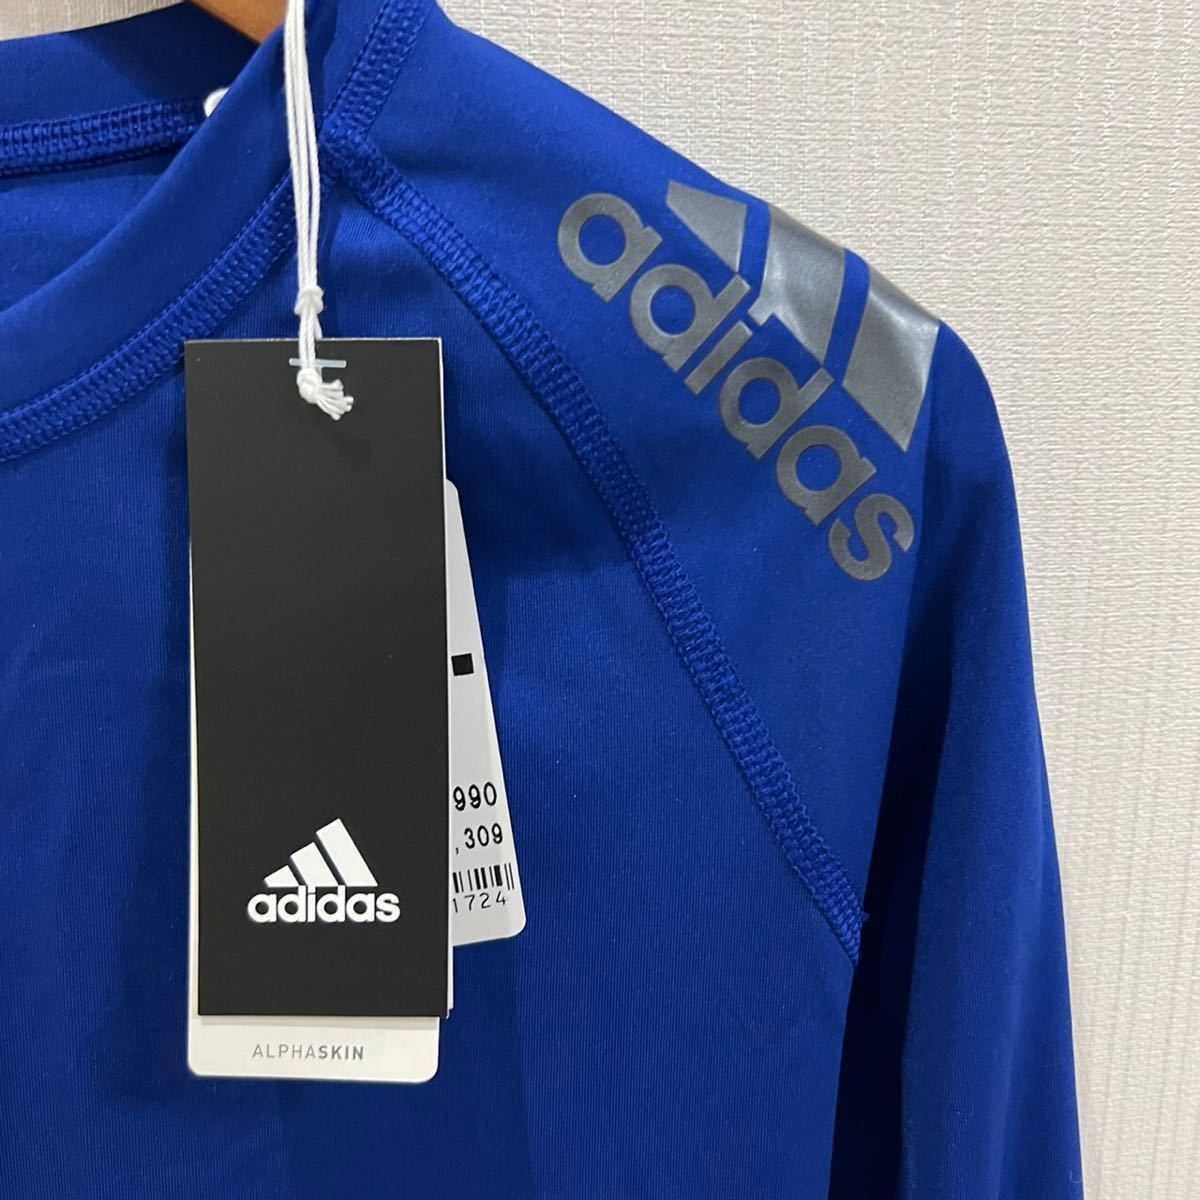 新品 未使用 adidas アディダス レディース 長袖 Tシャツ アンダー インナー ウェア 青色 ブルー Sサイズ スポーツ トレーニング ウェア